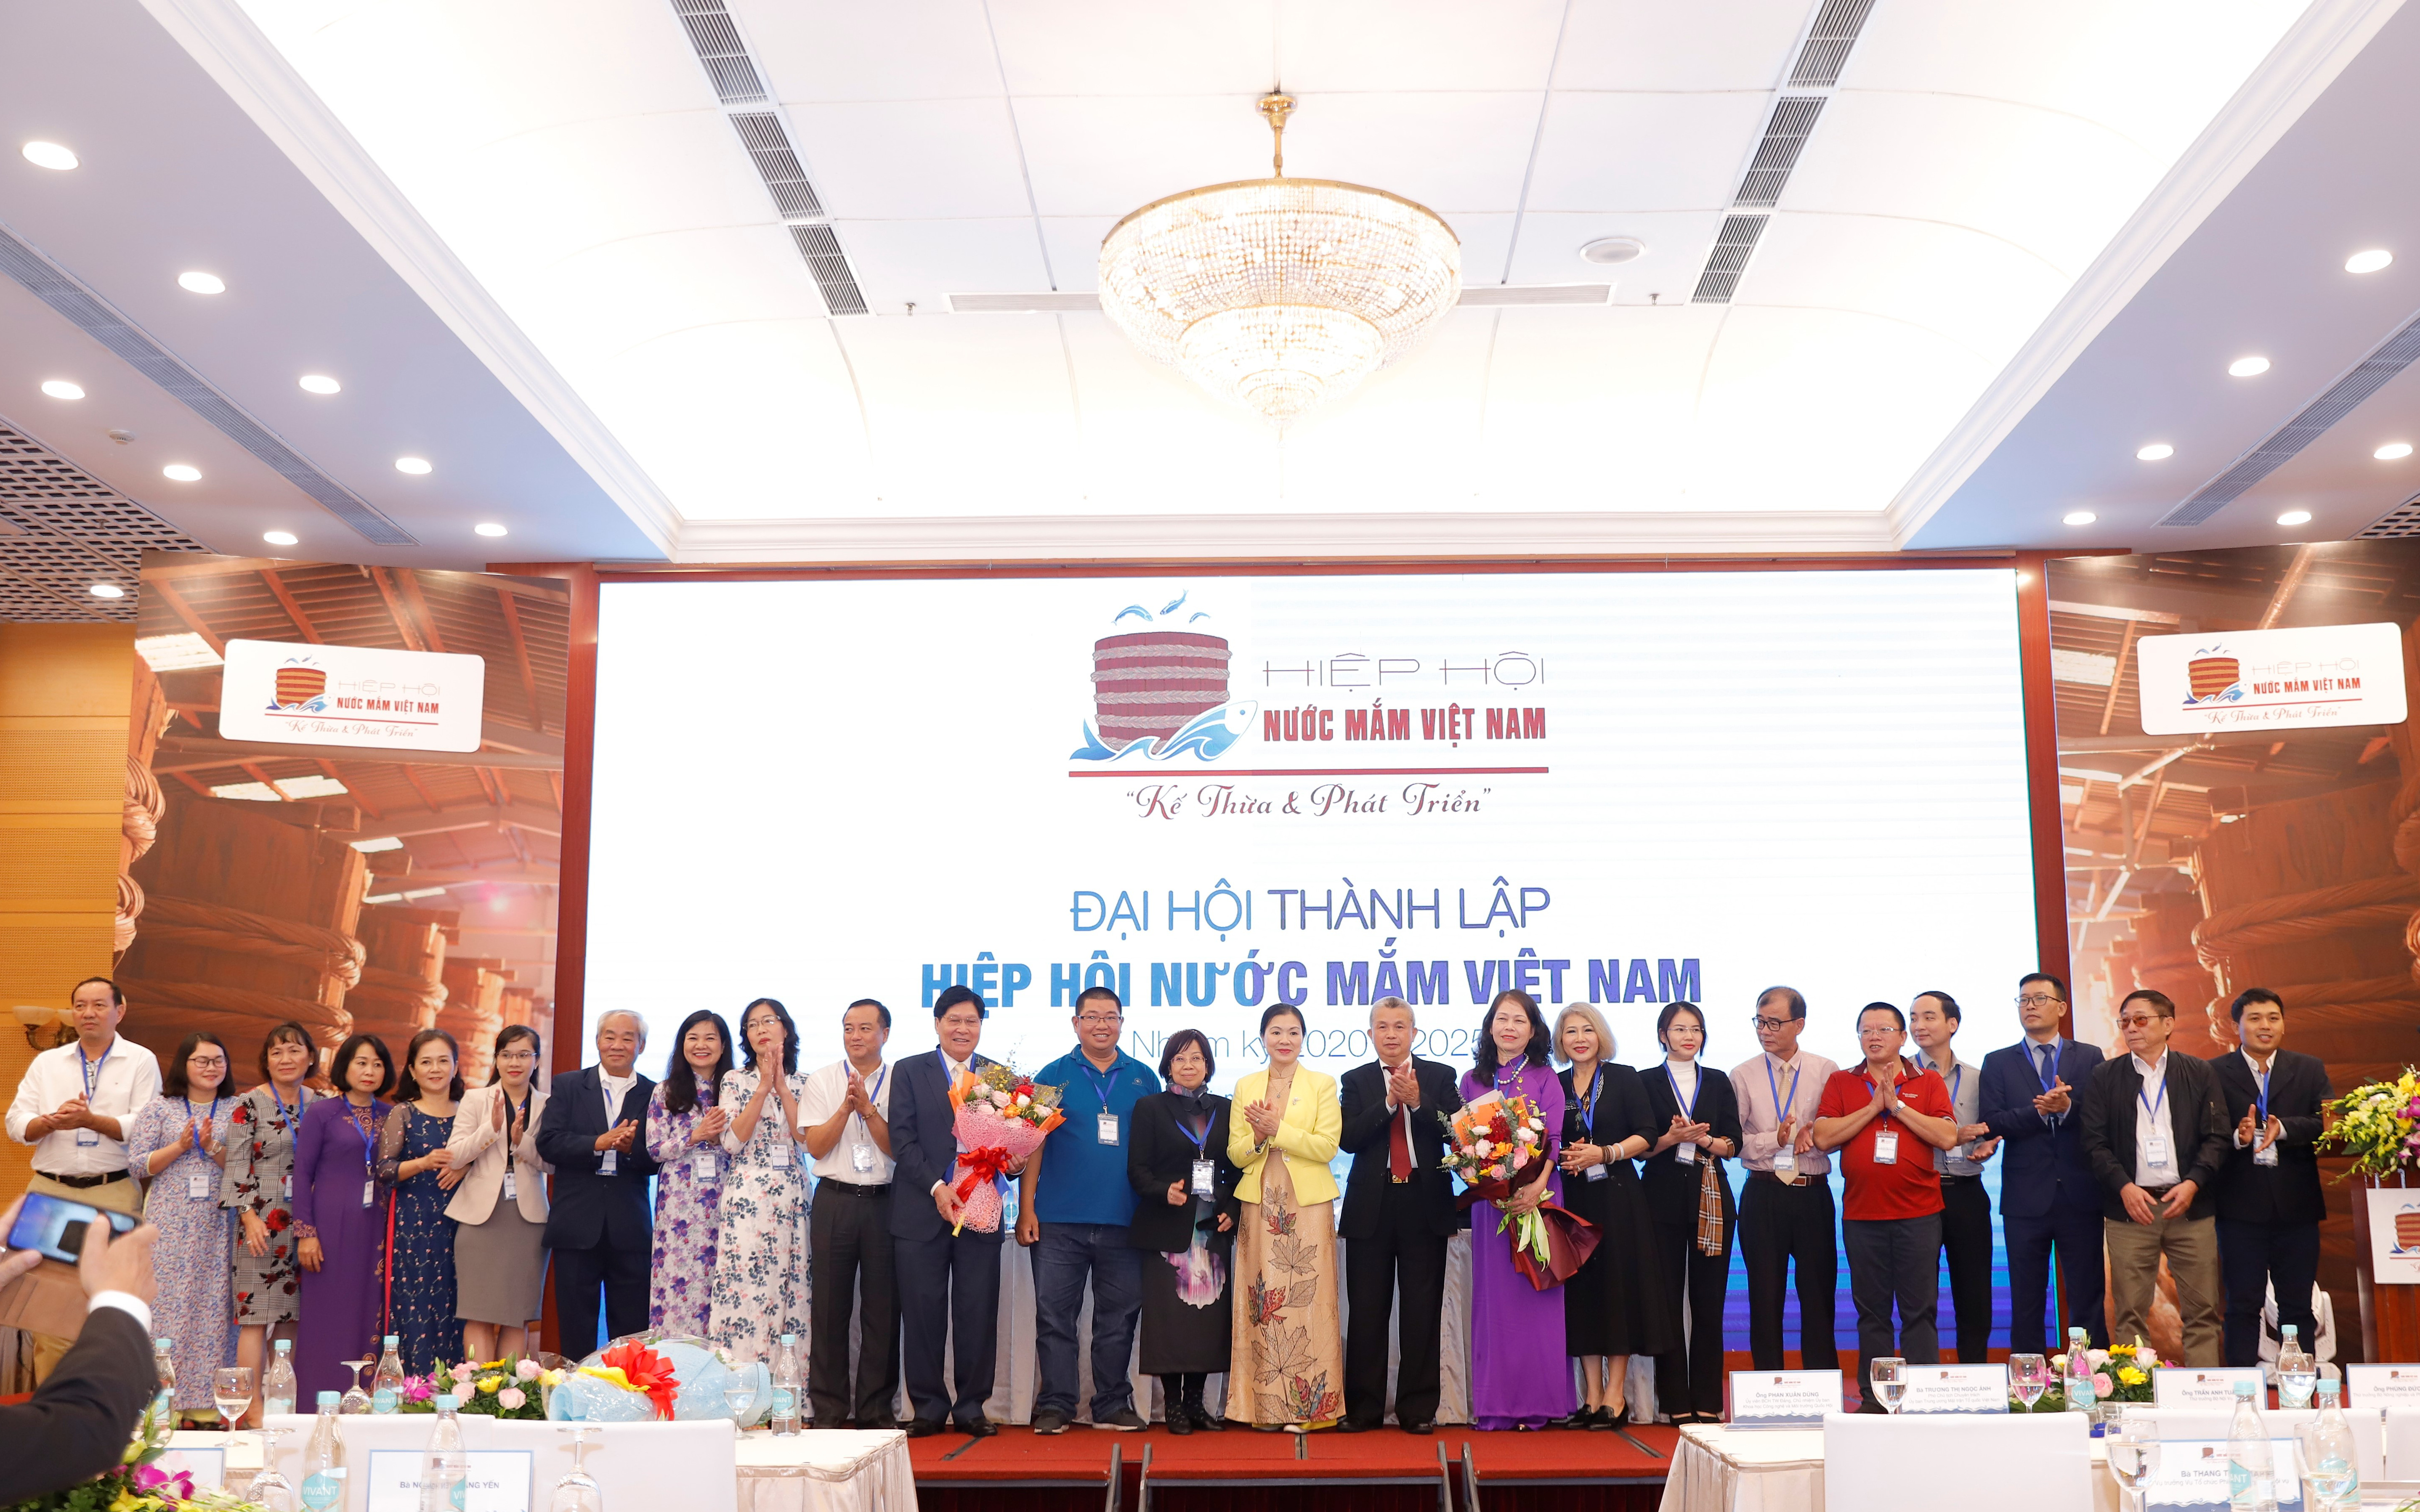 Thành viên Hiệp hội nước mắm Việt Nam đóng góp 70% doanh số toàn ngành nước mắm